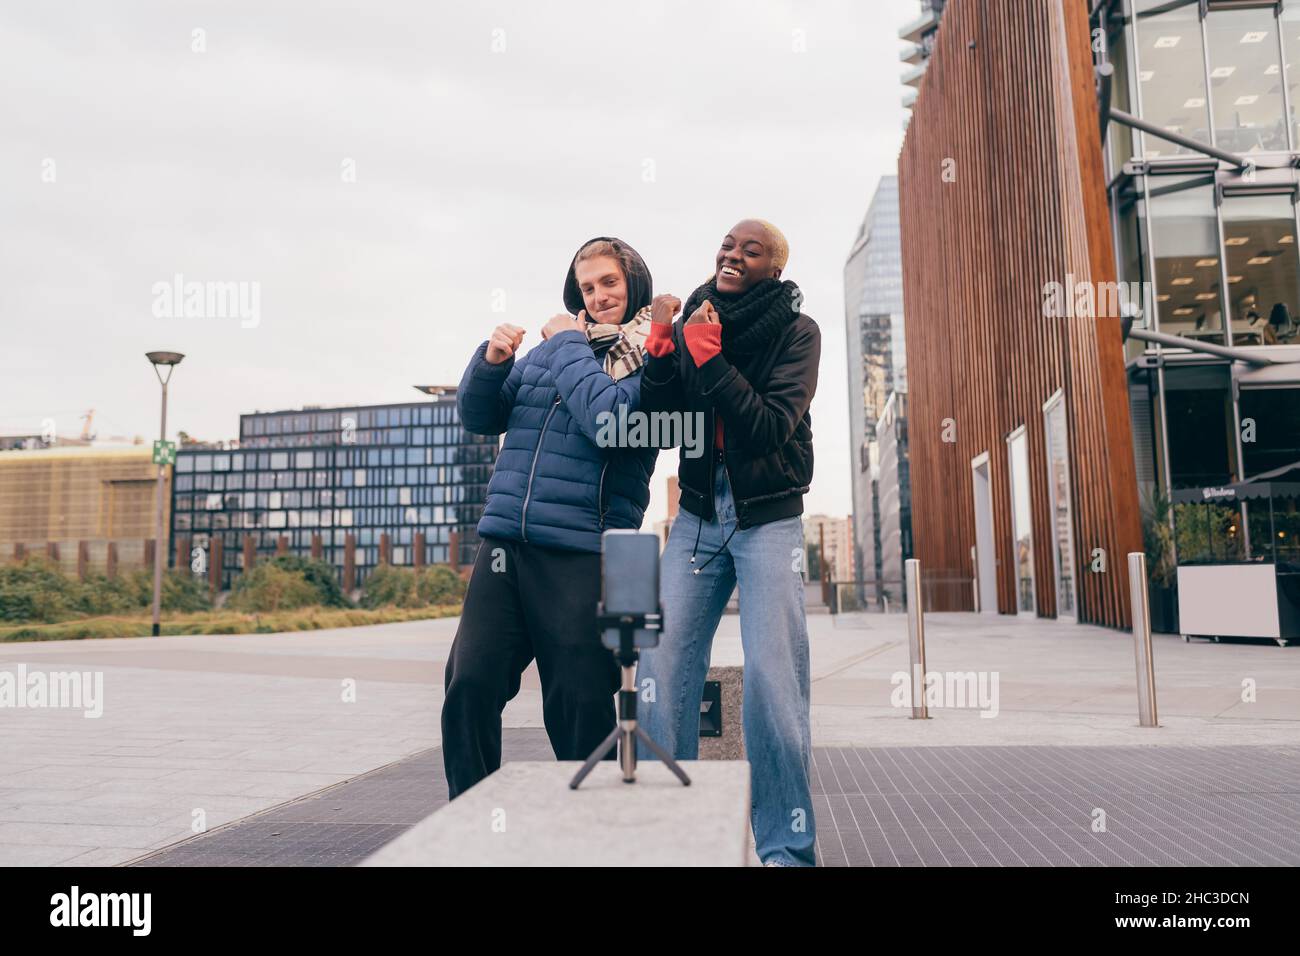 Italia, coppia sorridente che prende selfie in città Foto Stock